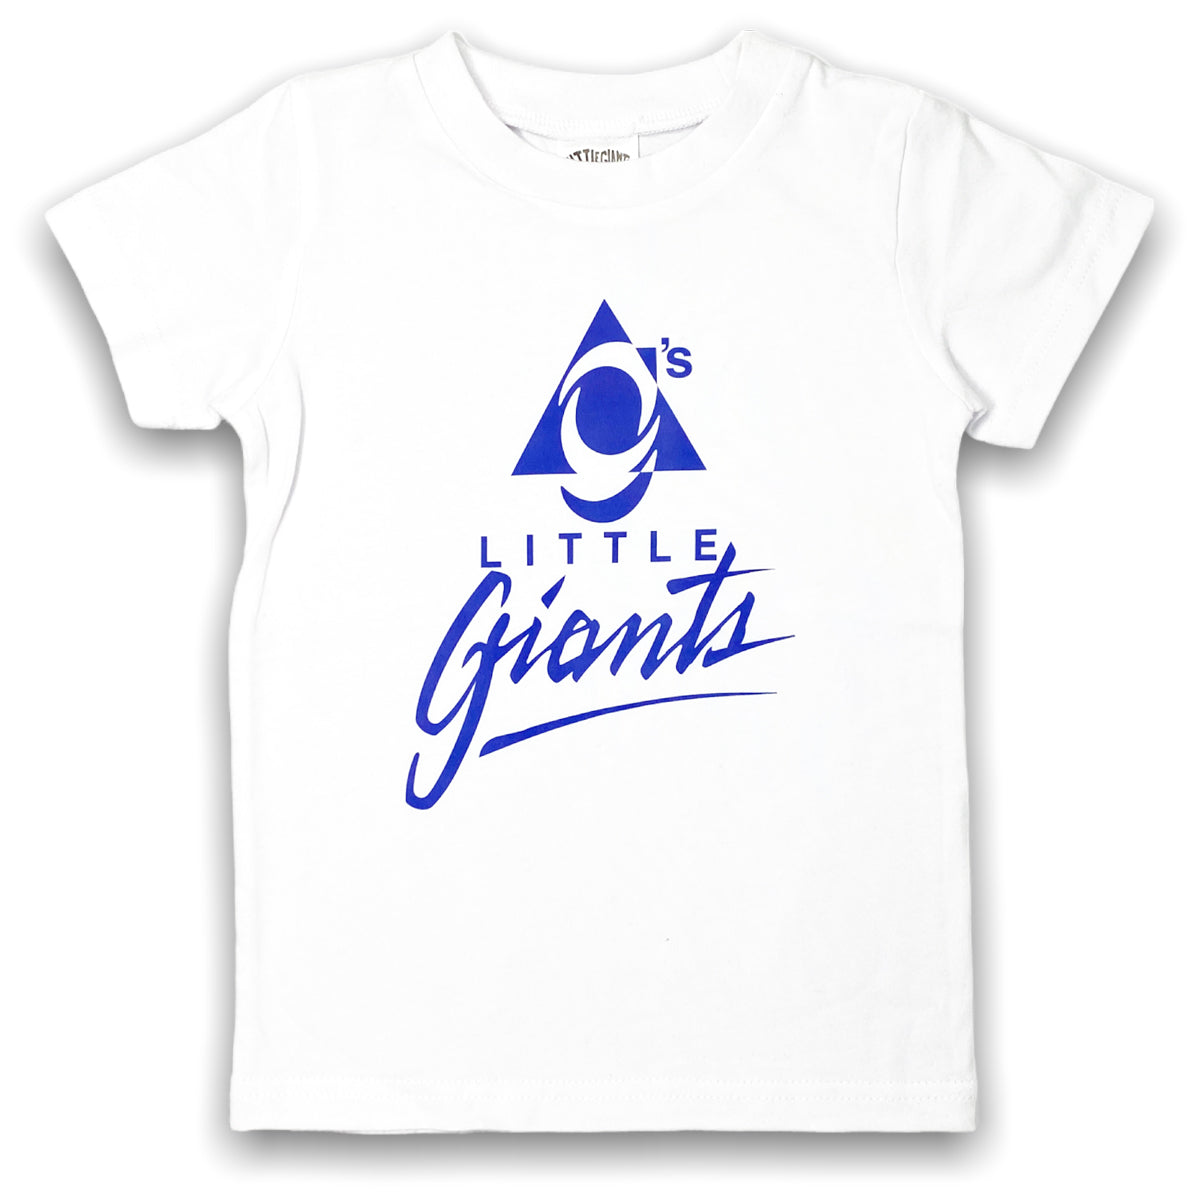 Little Giants Online T-shirt (White)